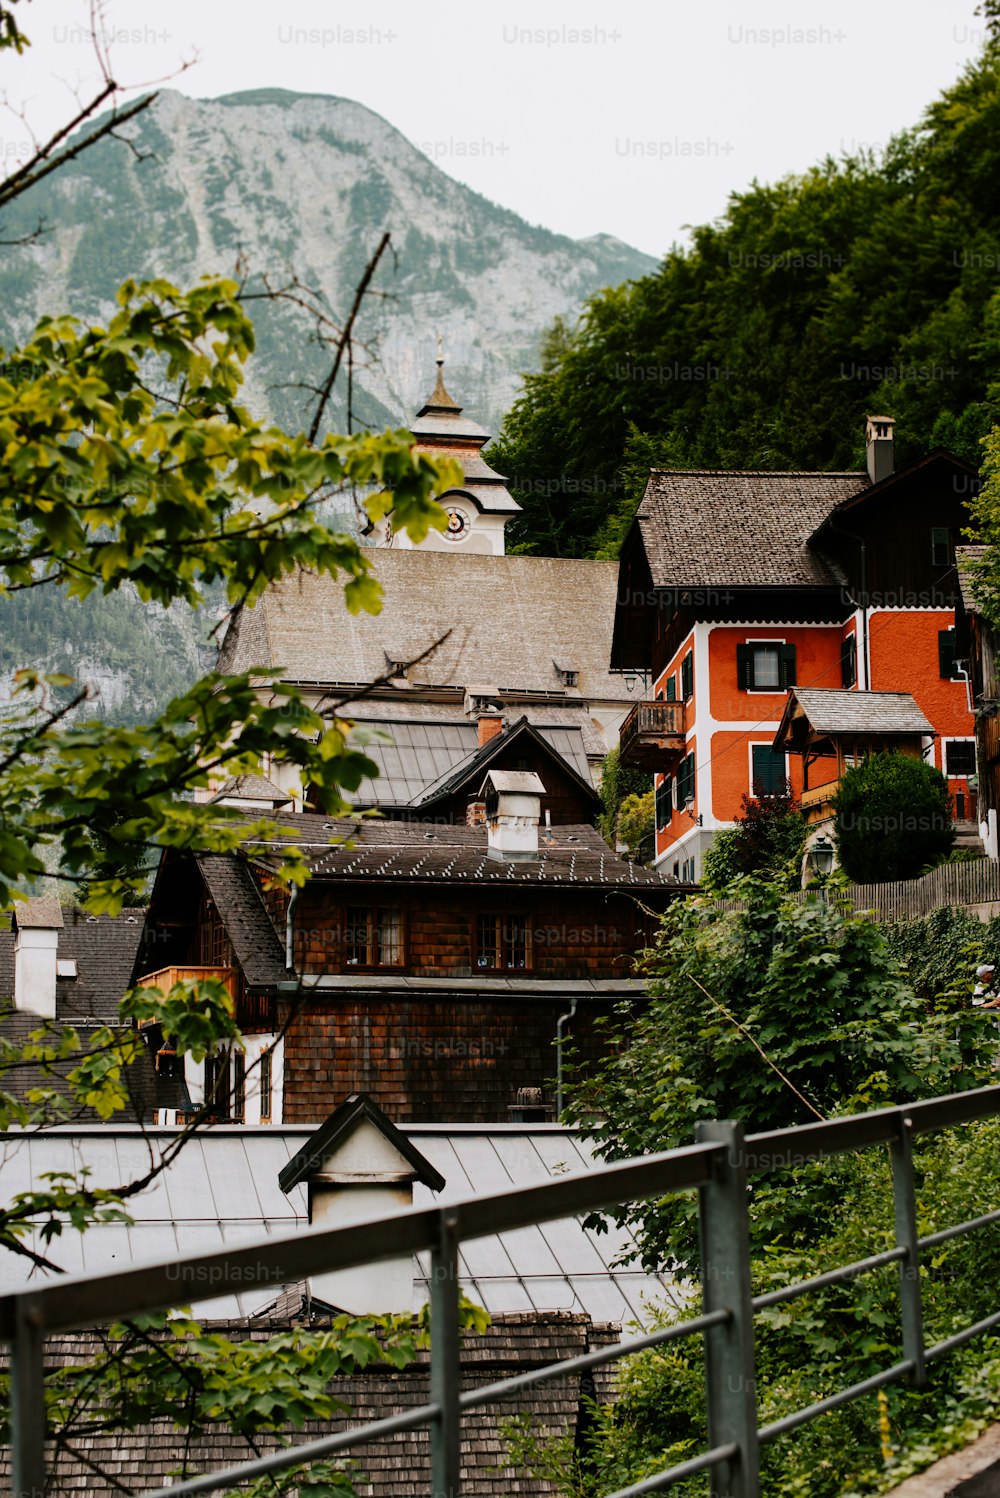 무성한 녹색 언덕 꼭대기에 앉아있는 두 채의 집